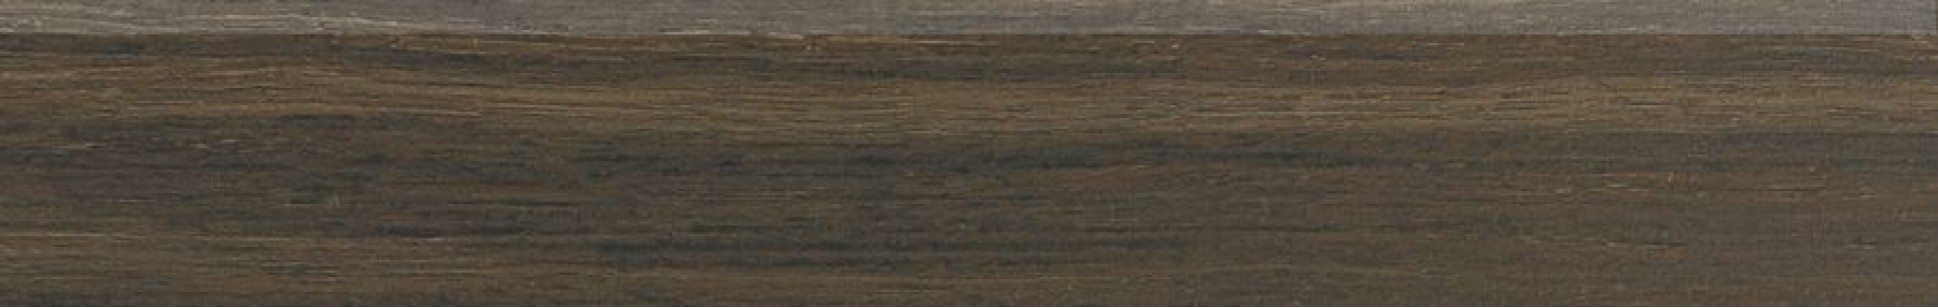 Плинтус Rako Board темно-коричневый 9.5x60 DSAS4144